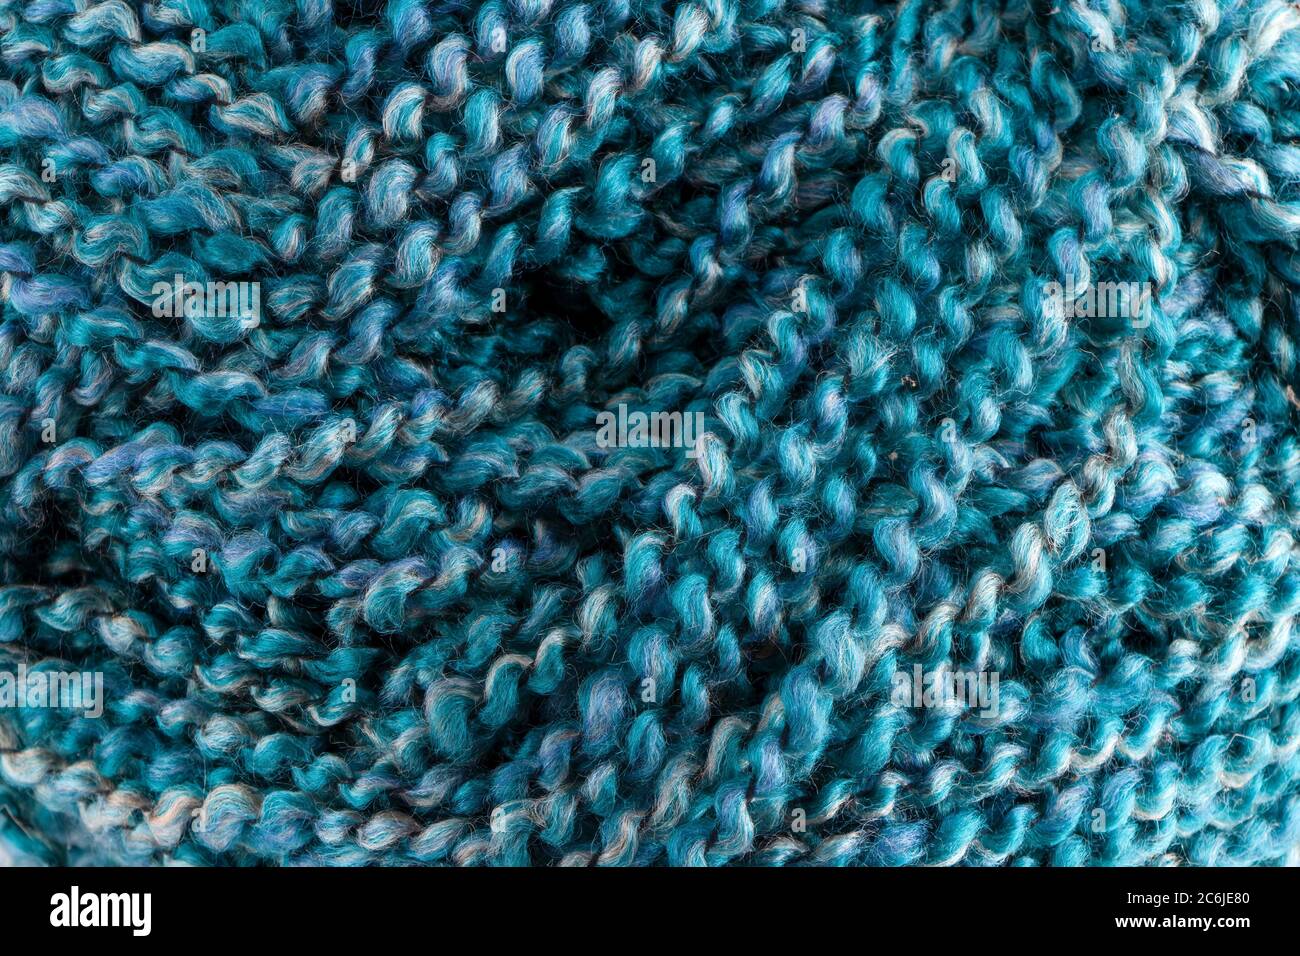 Twisted yarn immagini e fotografie stock ad alta risoluzione - Alamy